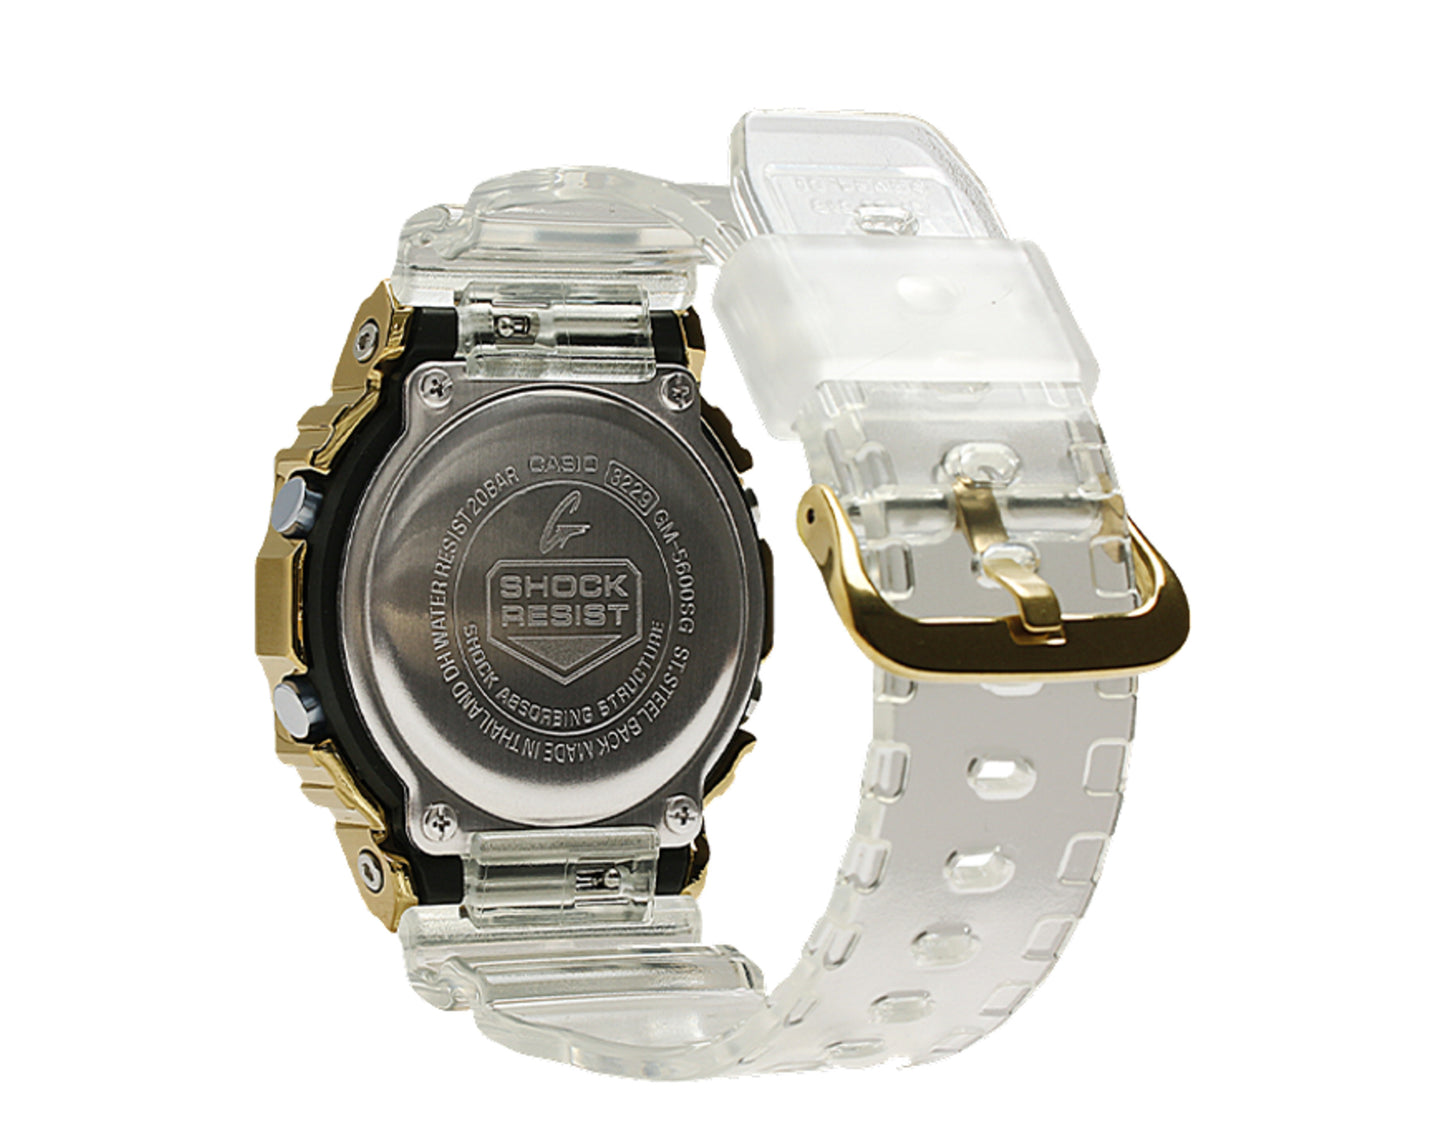 Casio G-Shock GM5600SG GOLD INGOT Digital Metal and Resin Men's Watch